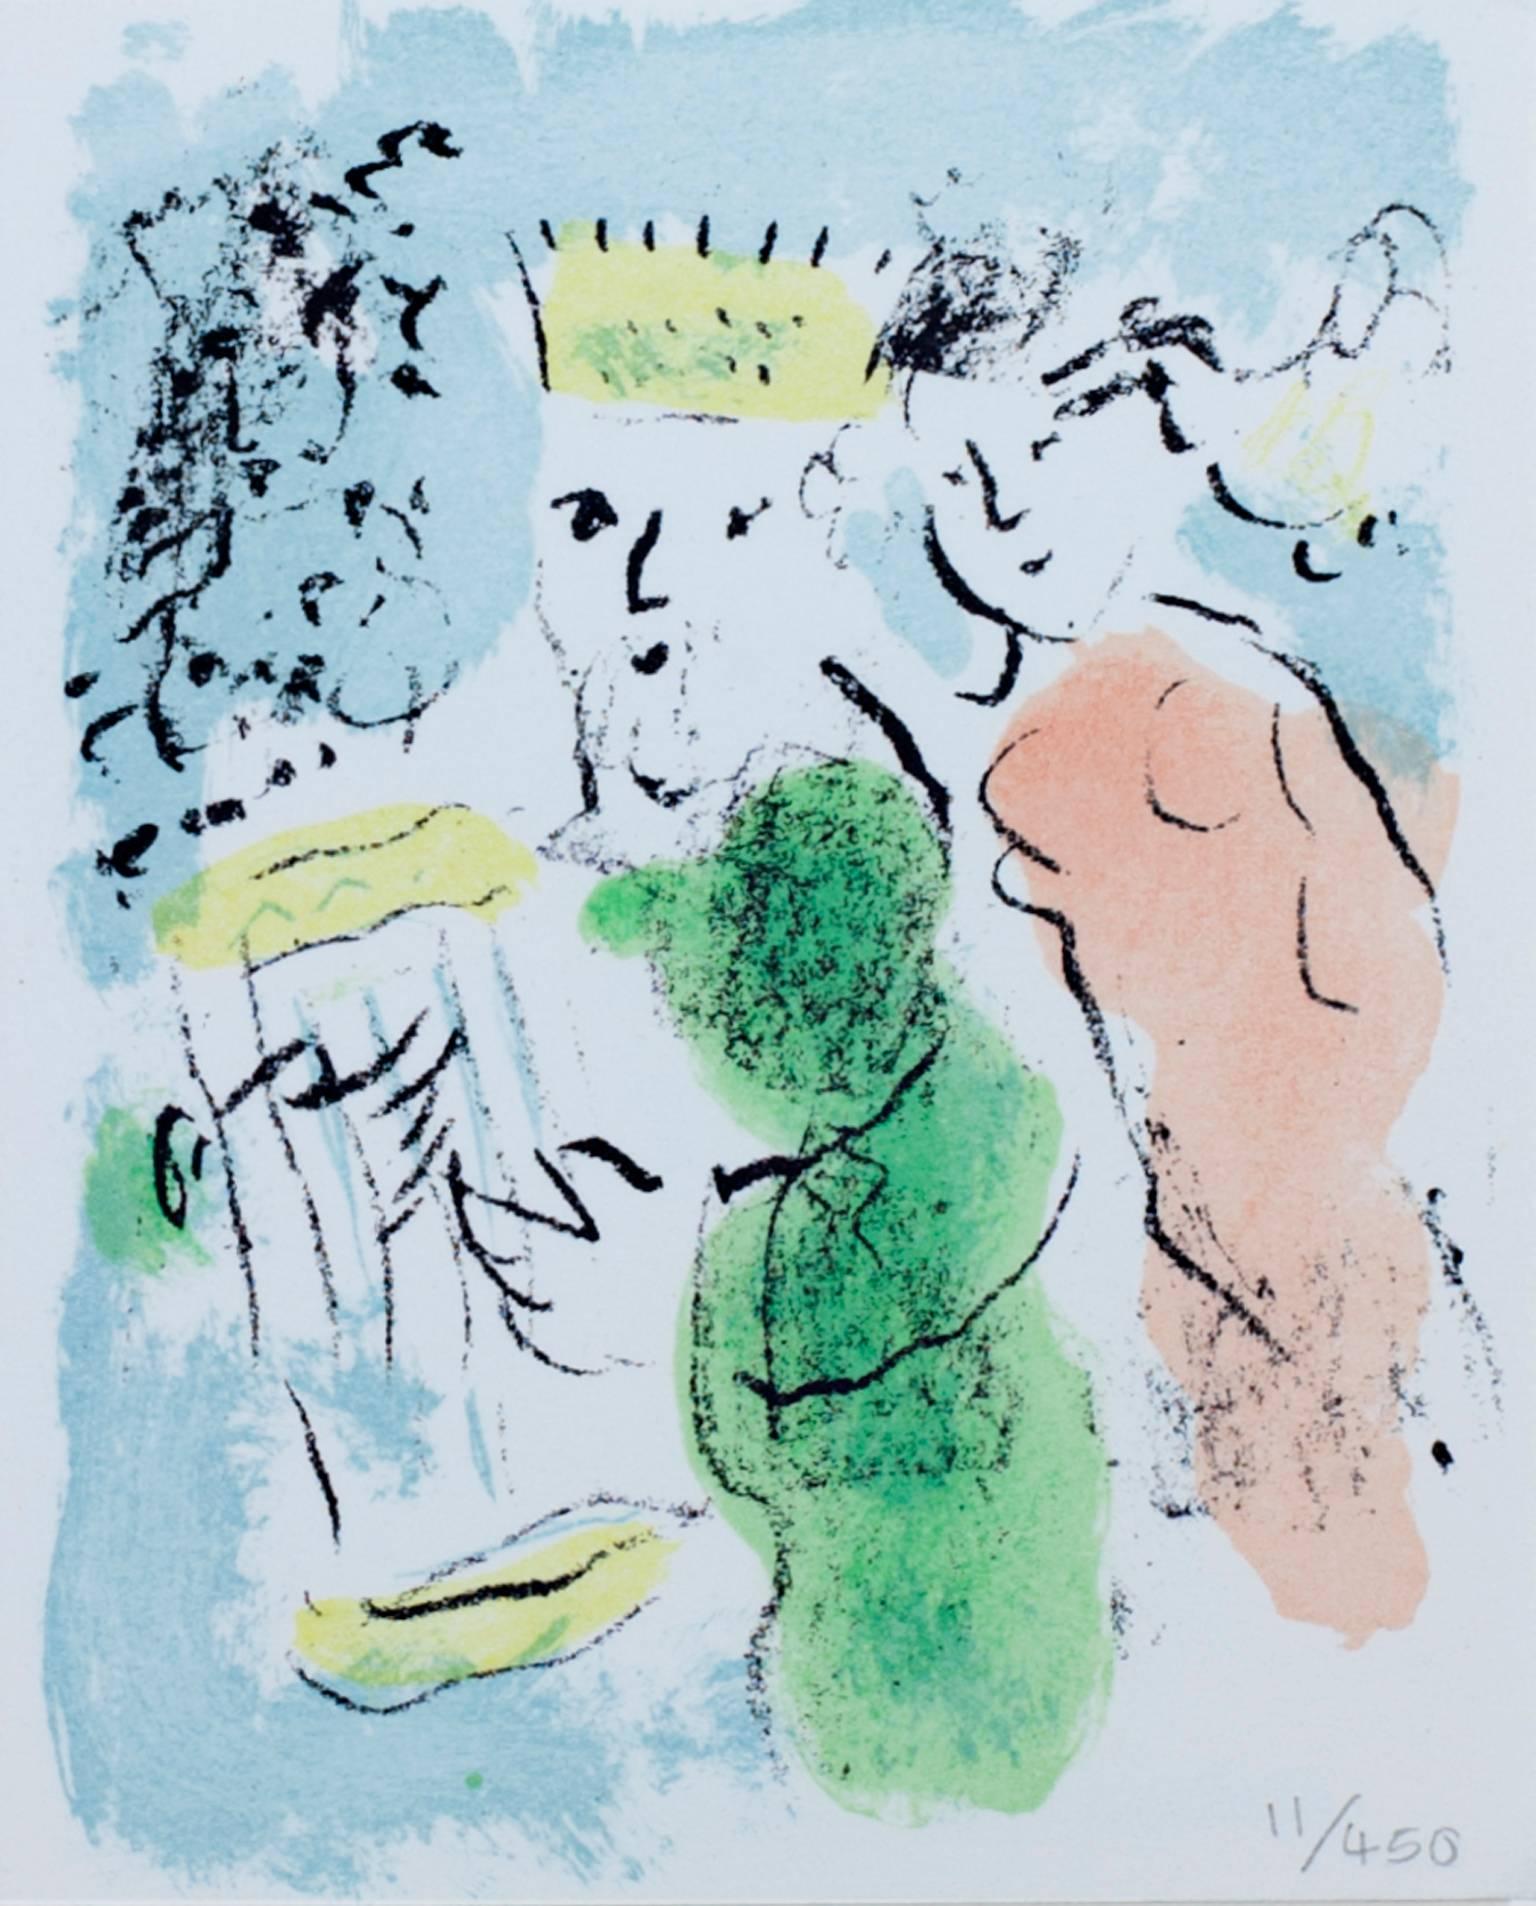 "Carte De Voeux (Neujahrsgrußkarte)" ist eine originale Farblithographie von Marc Chagall. Es handelt sich um die Ausgabe 11/450, und die Nummer ist mit Bleistift unten rechts geschrieben. Dieses Stück zeigt einen Mann mit einer Krone, dahinter eine